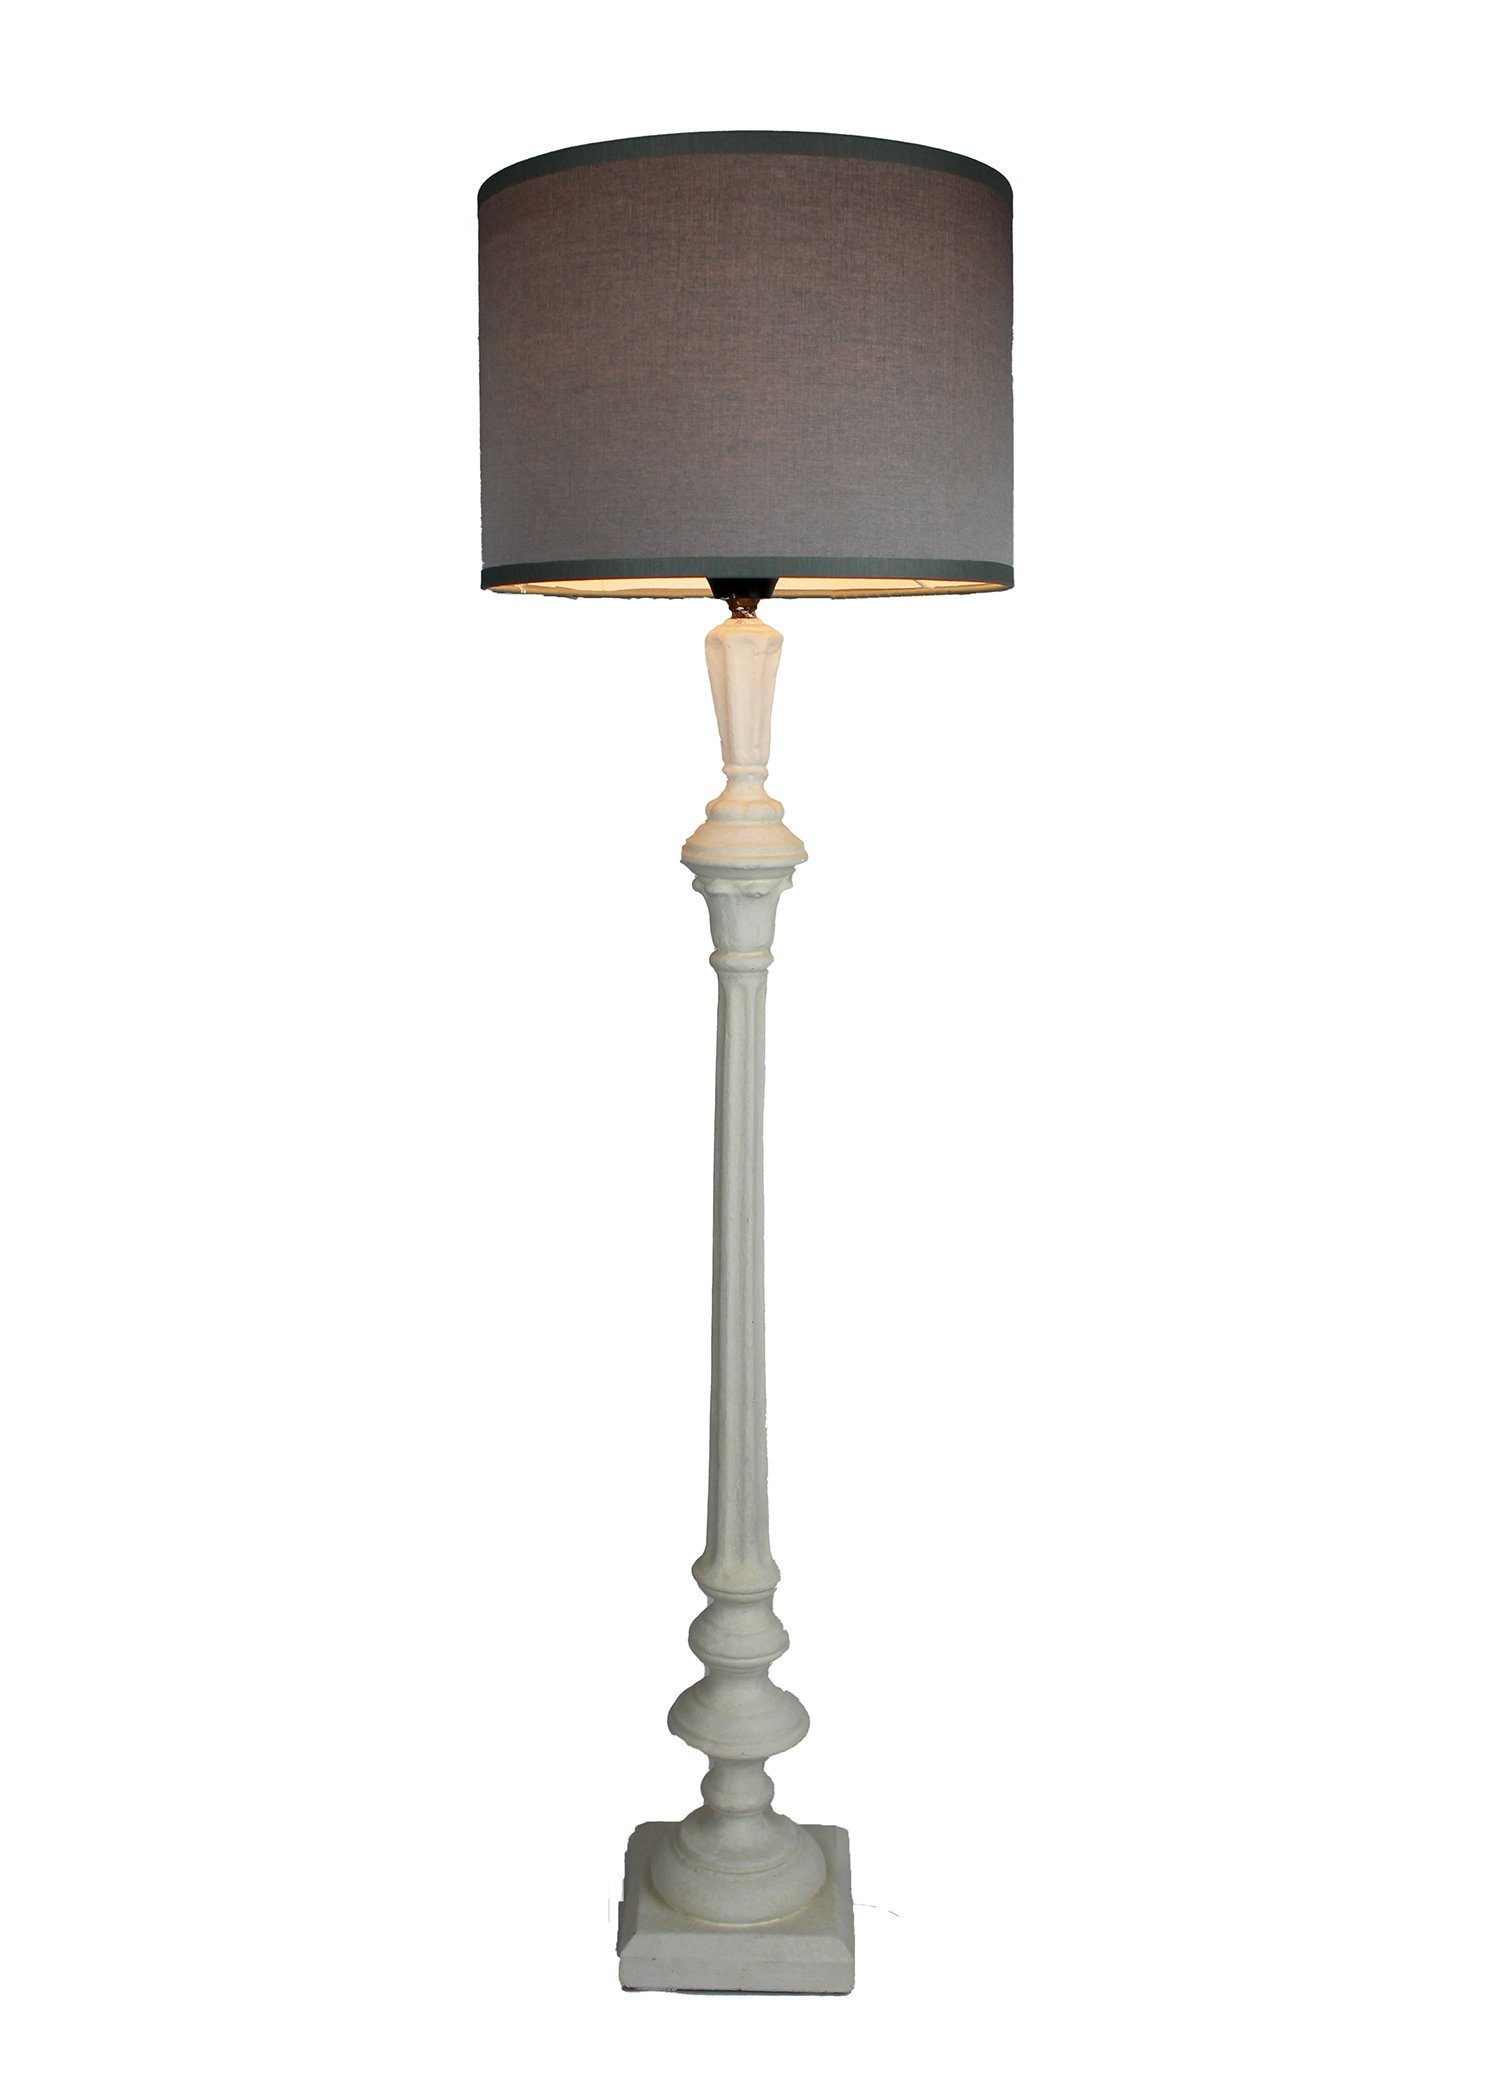 Signature Home Collection Tischleuchte Tischlampe schmal Holz gedrechselt lackiert mit Lampenschirm, ohne Leuchtmittel, warmweiß, handgefertigt in Italien weiß - grau